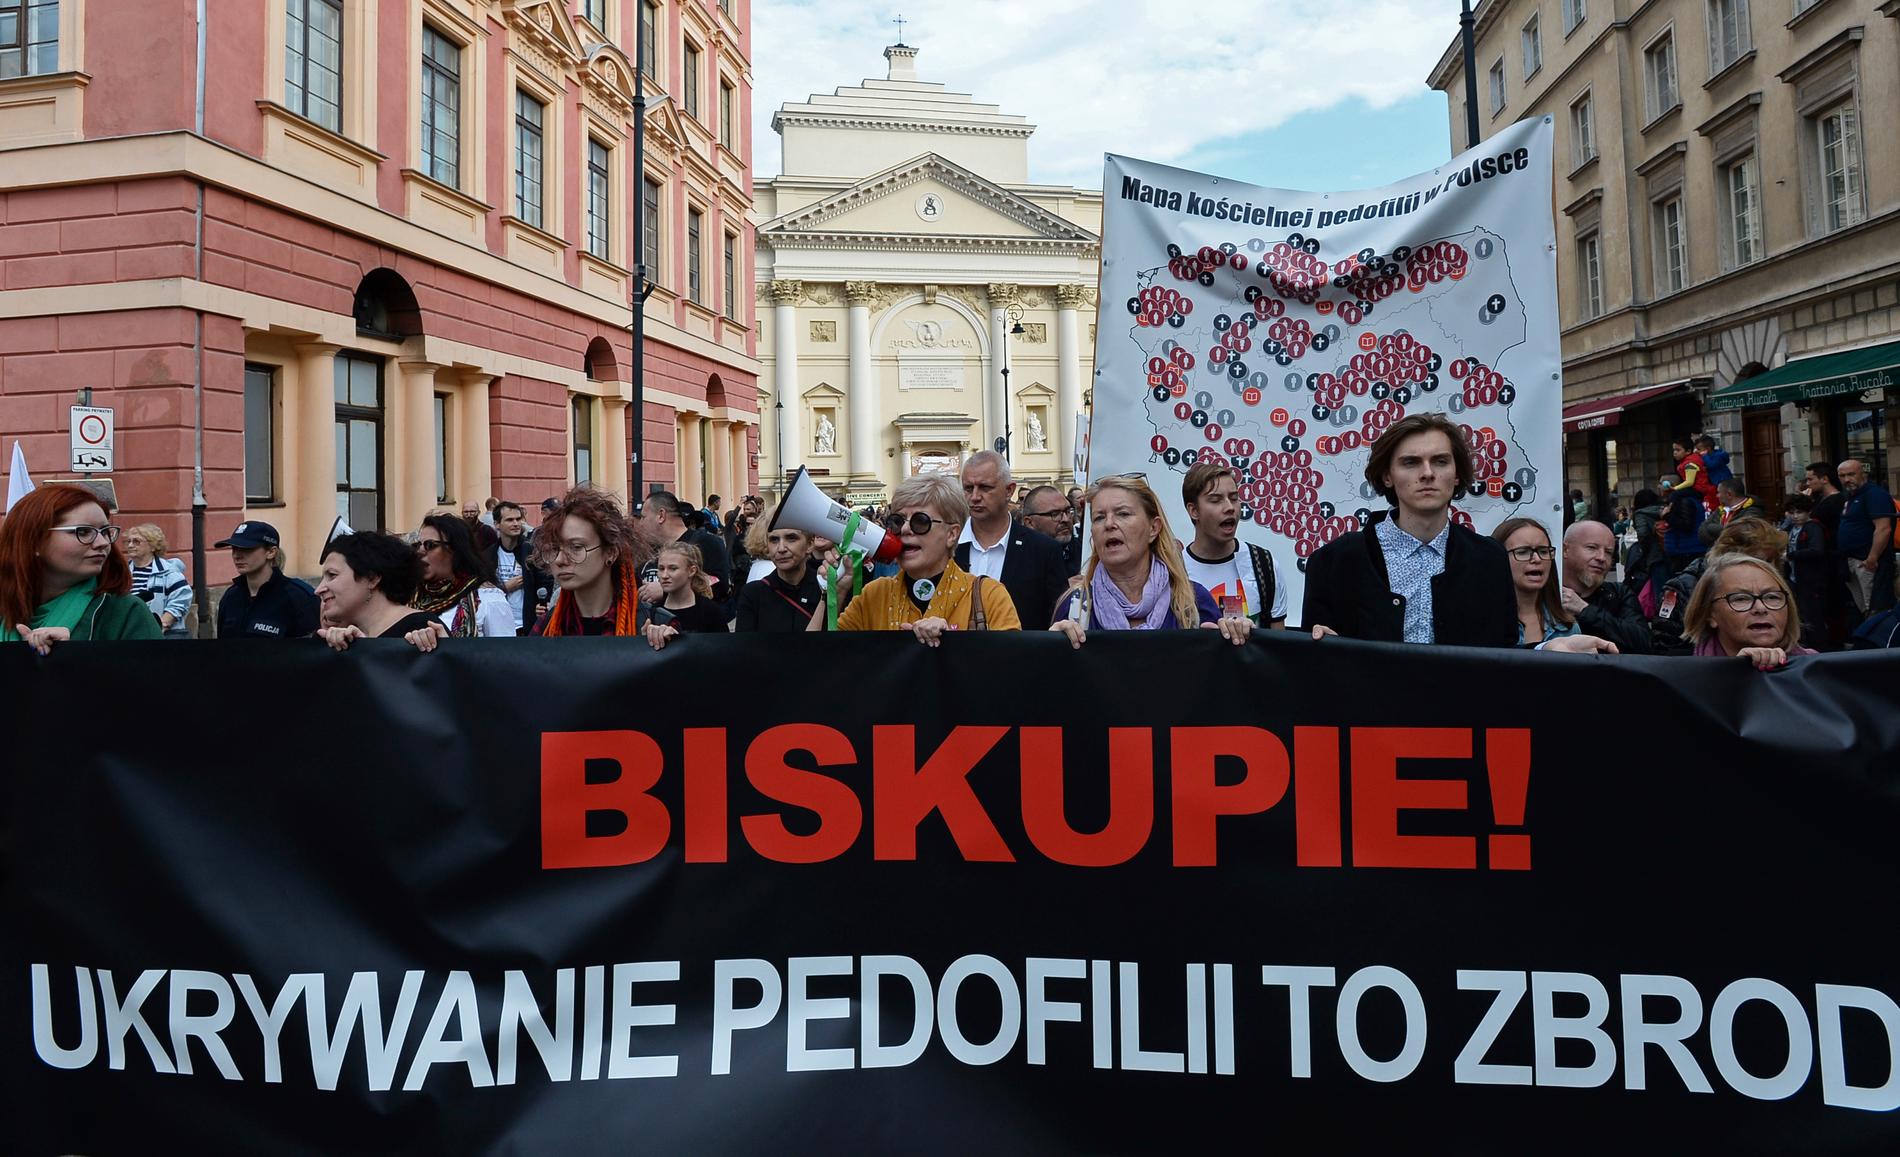 Aktivister demonstrerade i Warszawa på söndagen. "Biskop! Att dölja pedofili är ett brott" lyder banderollen. Arkivbild.